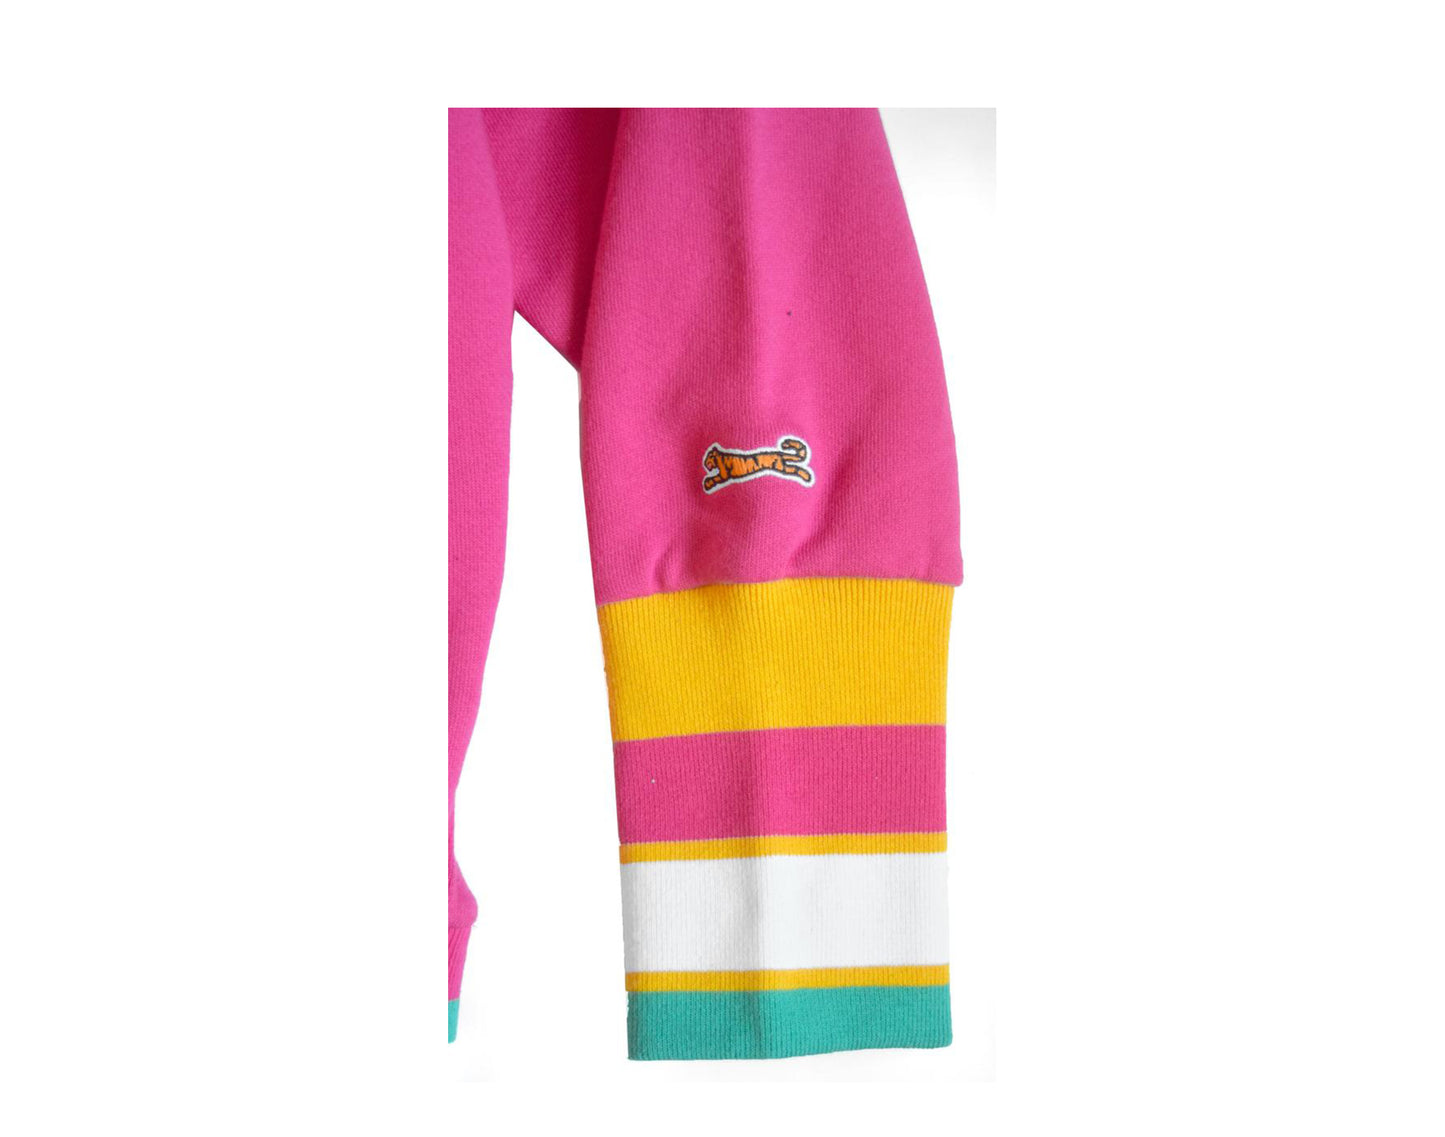 Le Tigre Elizabeth Crew Magenta Pink/Yellow Women's Sweatshirt S20KT001-MAG